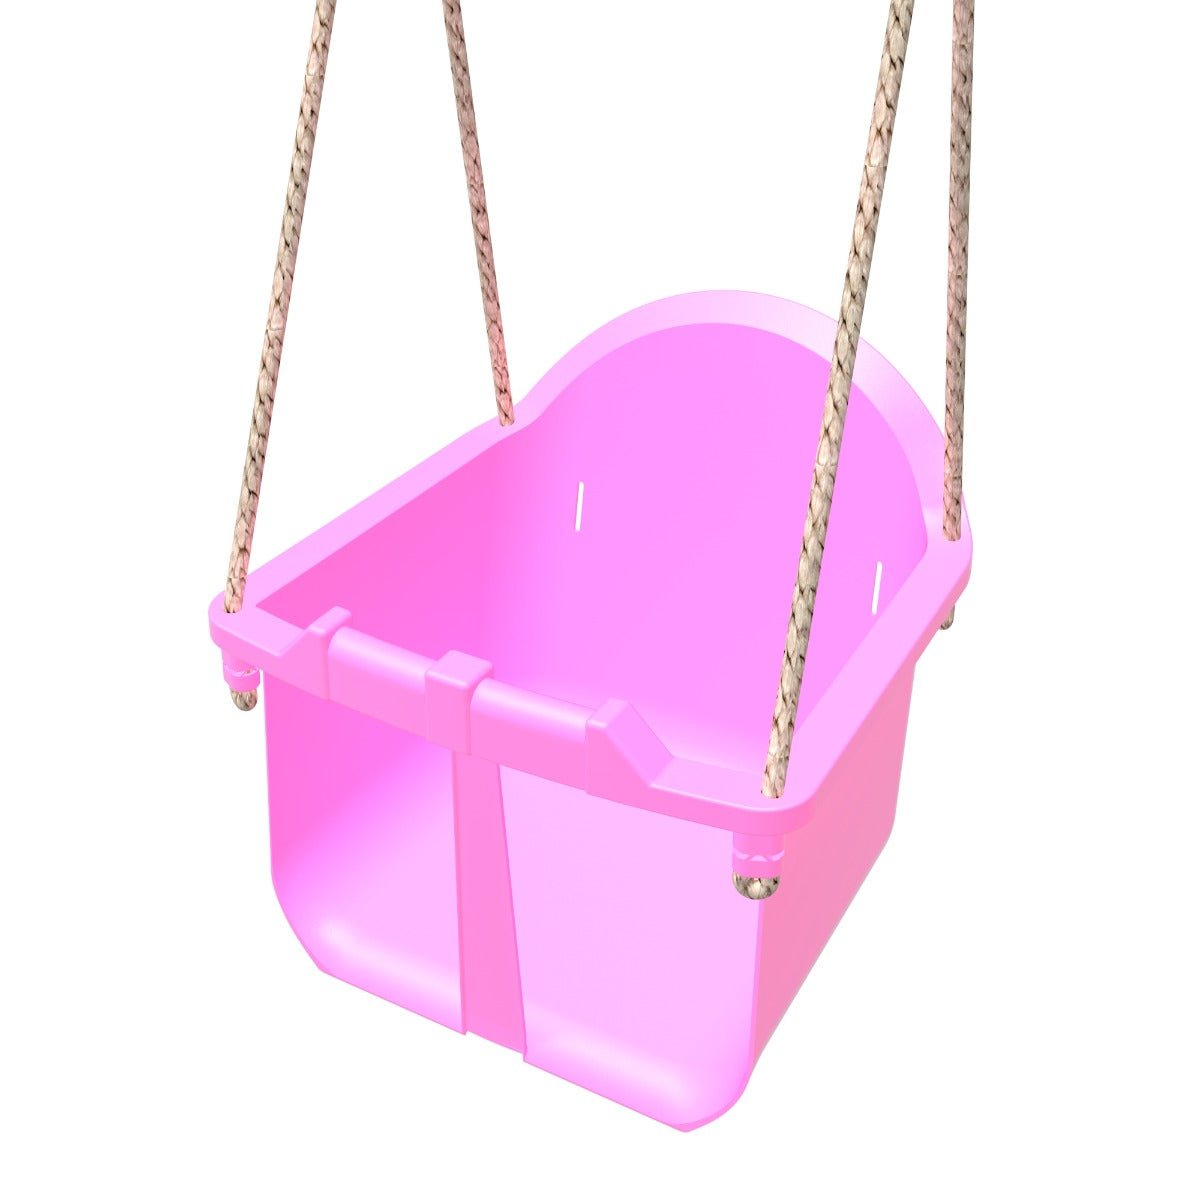 Rebo Toddler Swing Seat - Pink